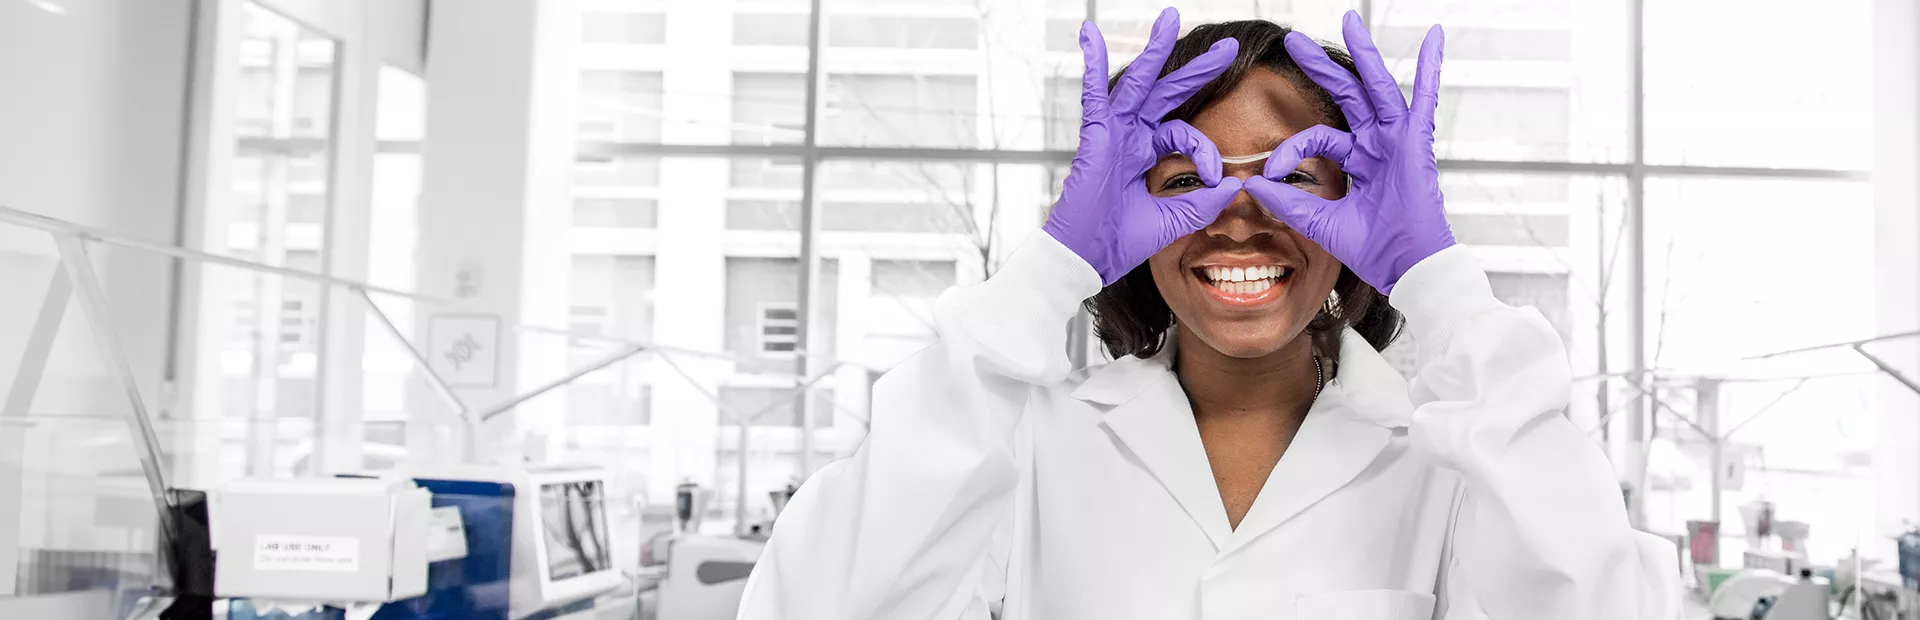 Wissenschaftlerin formt Brille mit den Händen